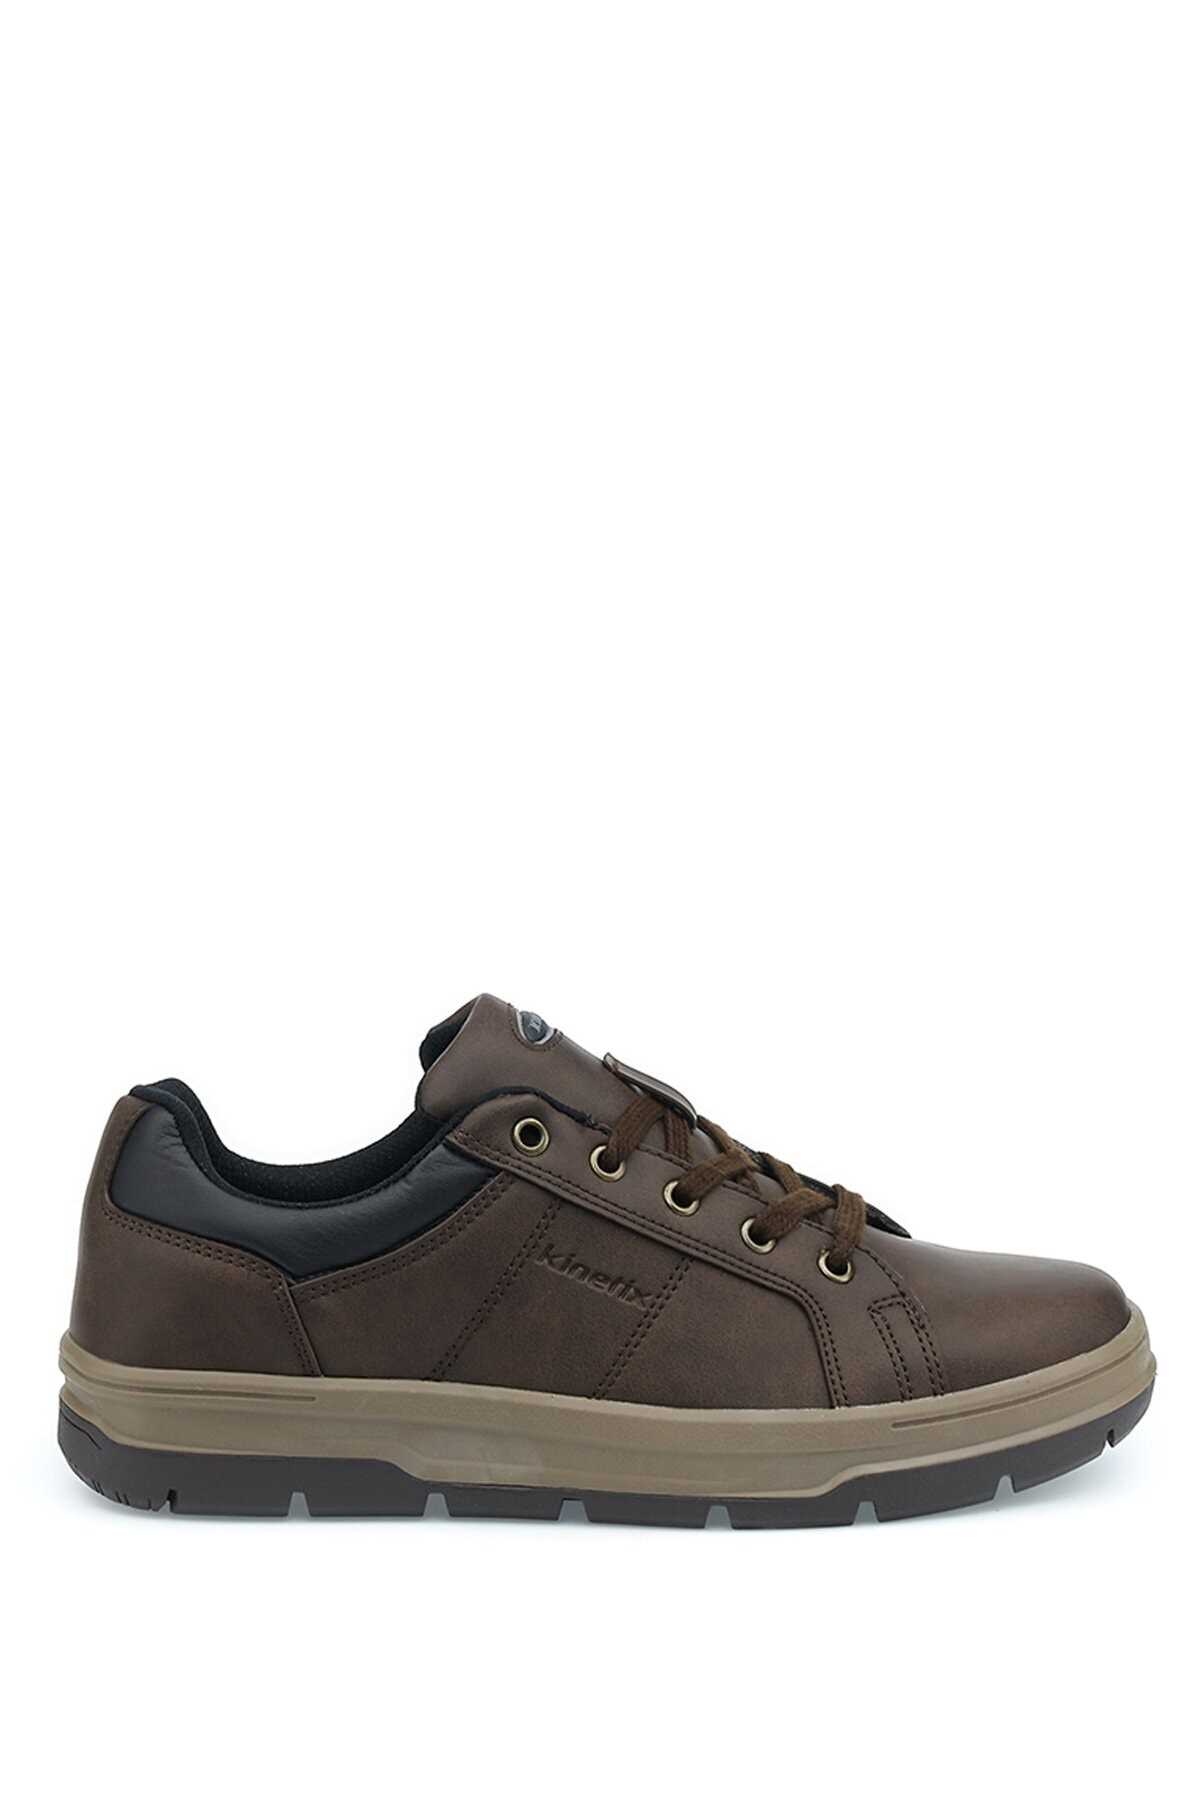 کفش کوهنوردی مردانه ارزان قیمت برند کینتیکس kinetix رنگ قهوه ای کد ty143561118